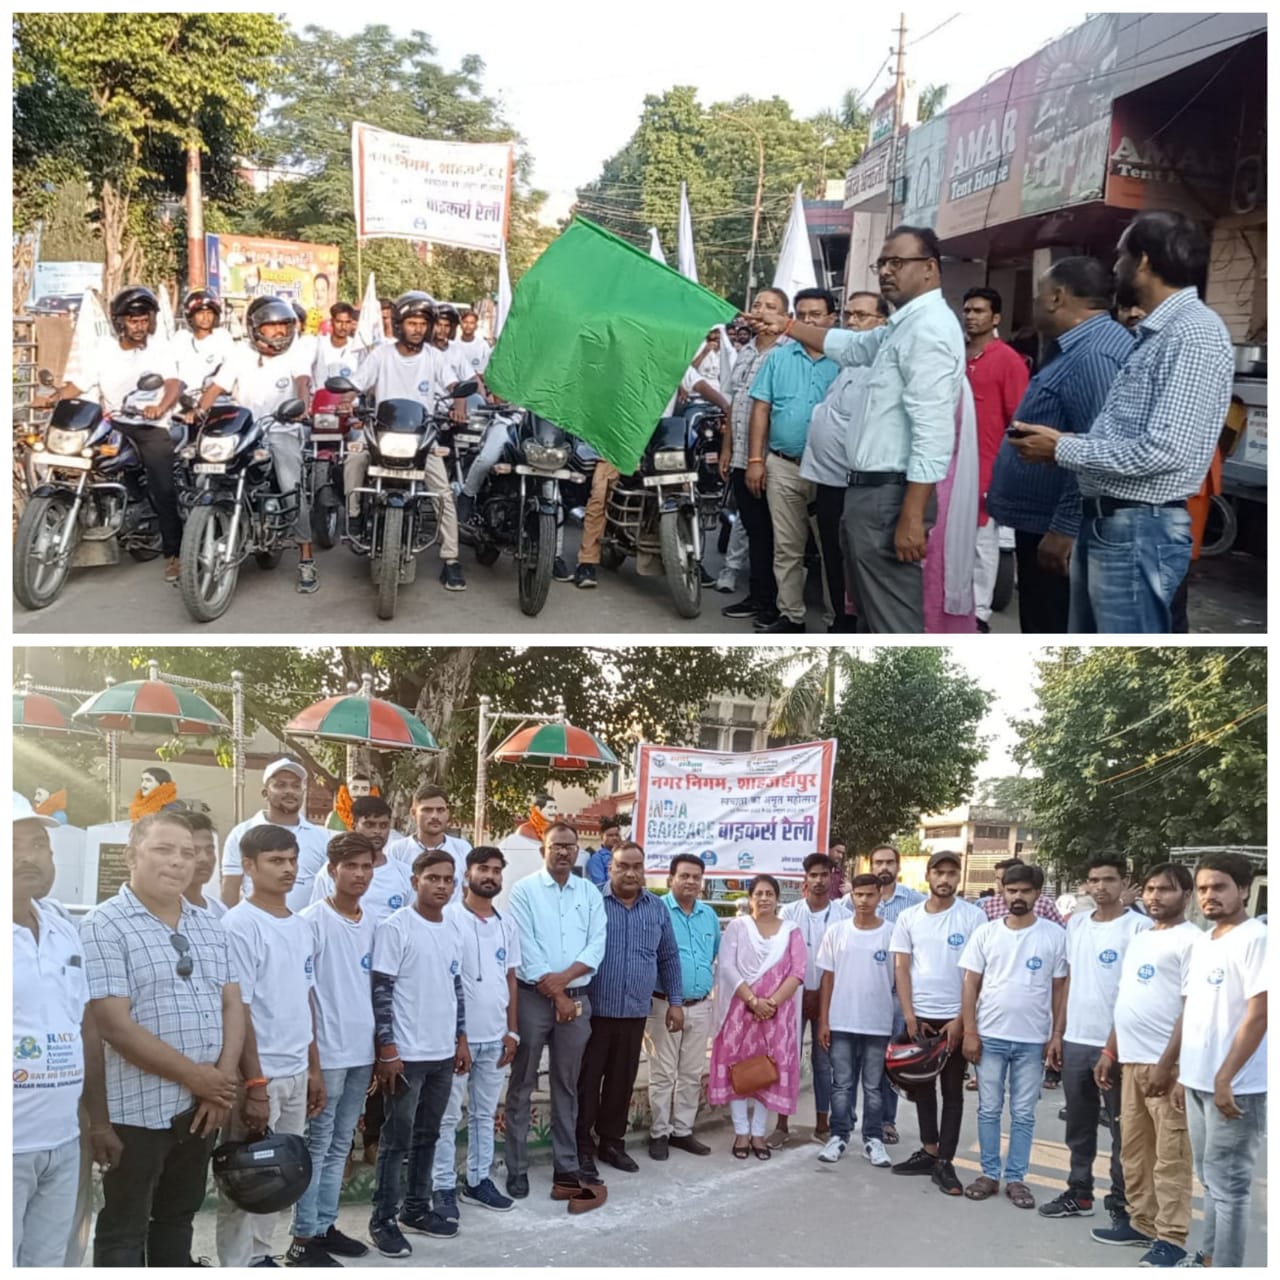 नगर आयुक्त संतोष शर्मा ने इंडियन स्वच्छता लीग बाइकर्स रैली को झंडी दिखा कर किया रवाना | New India Times